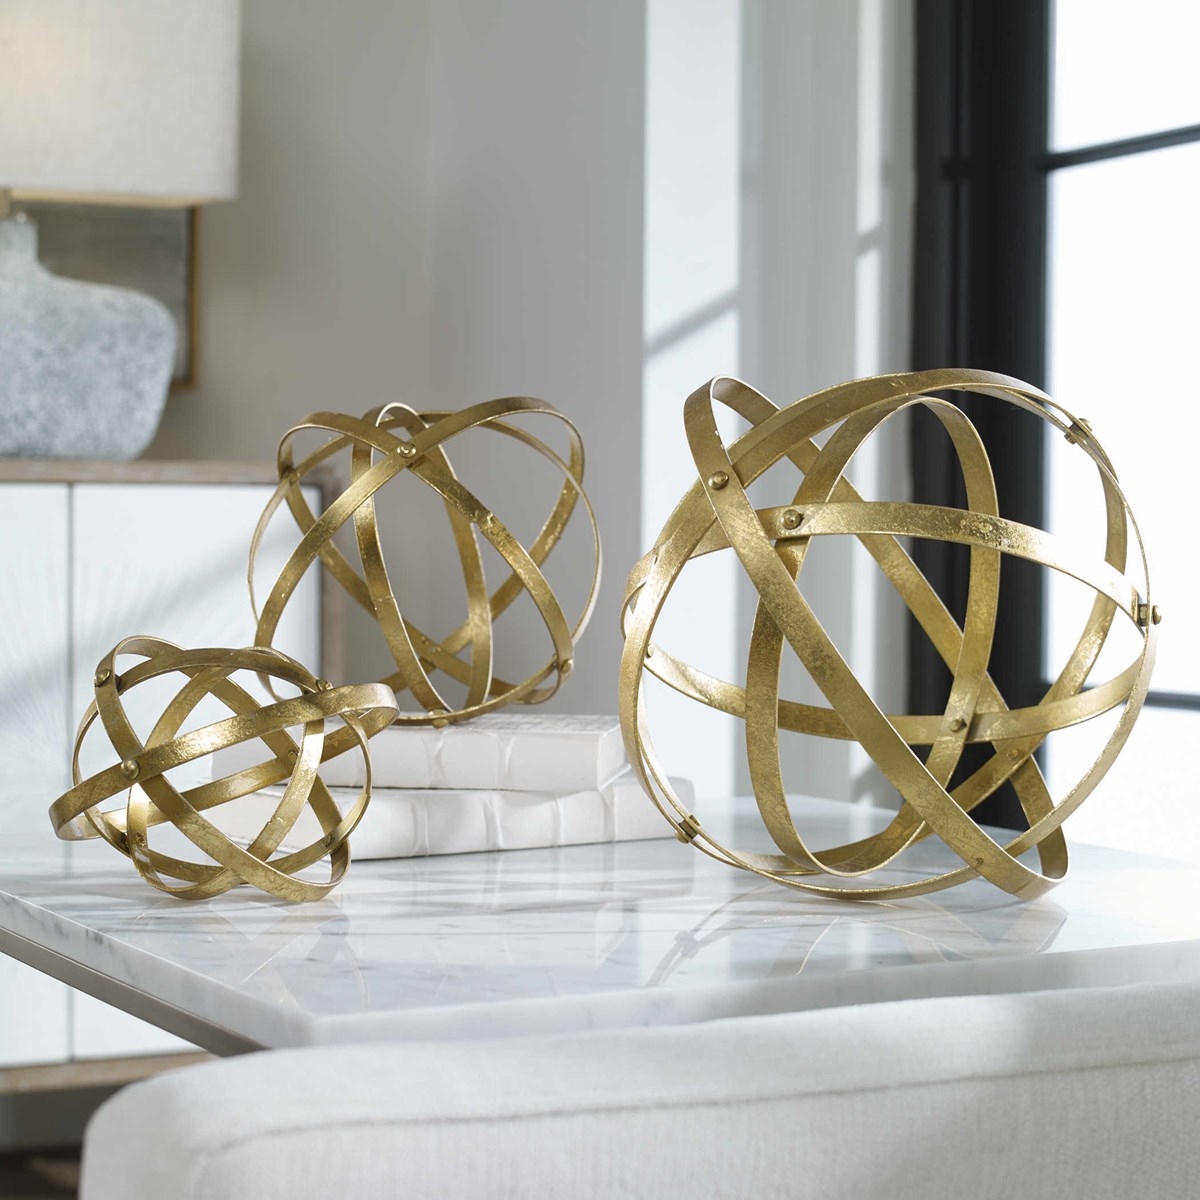 Acelet Gold Spheres, Set of 3 - Image 3